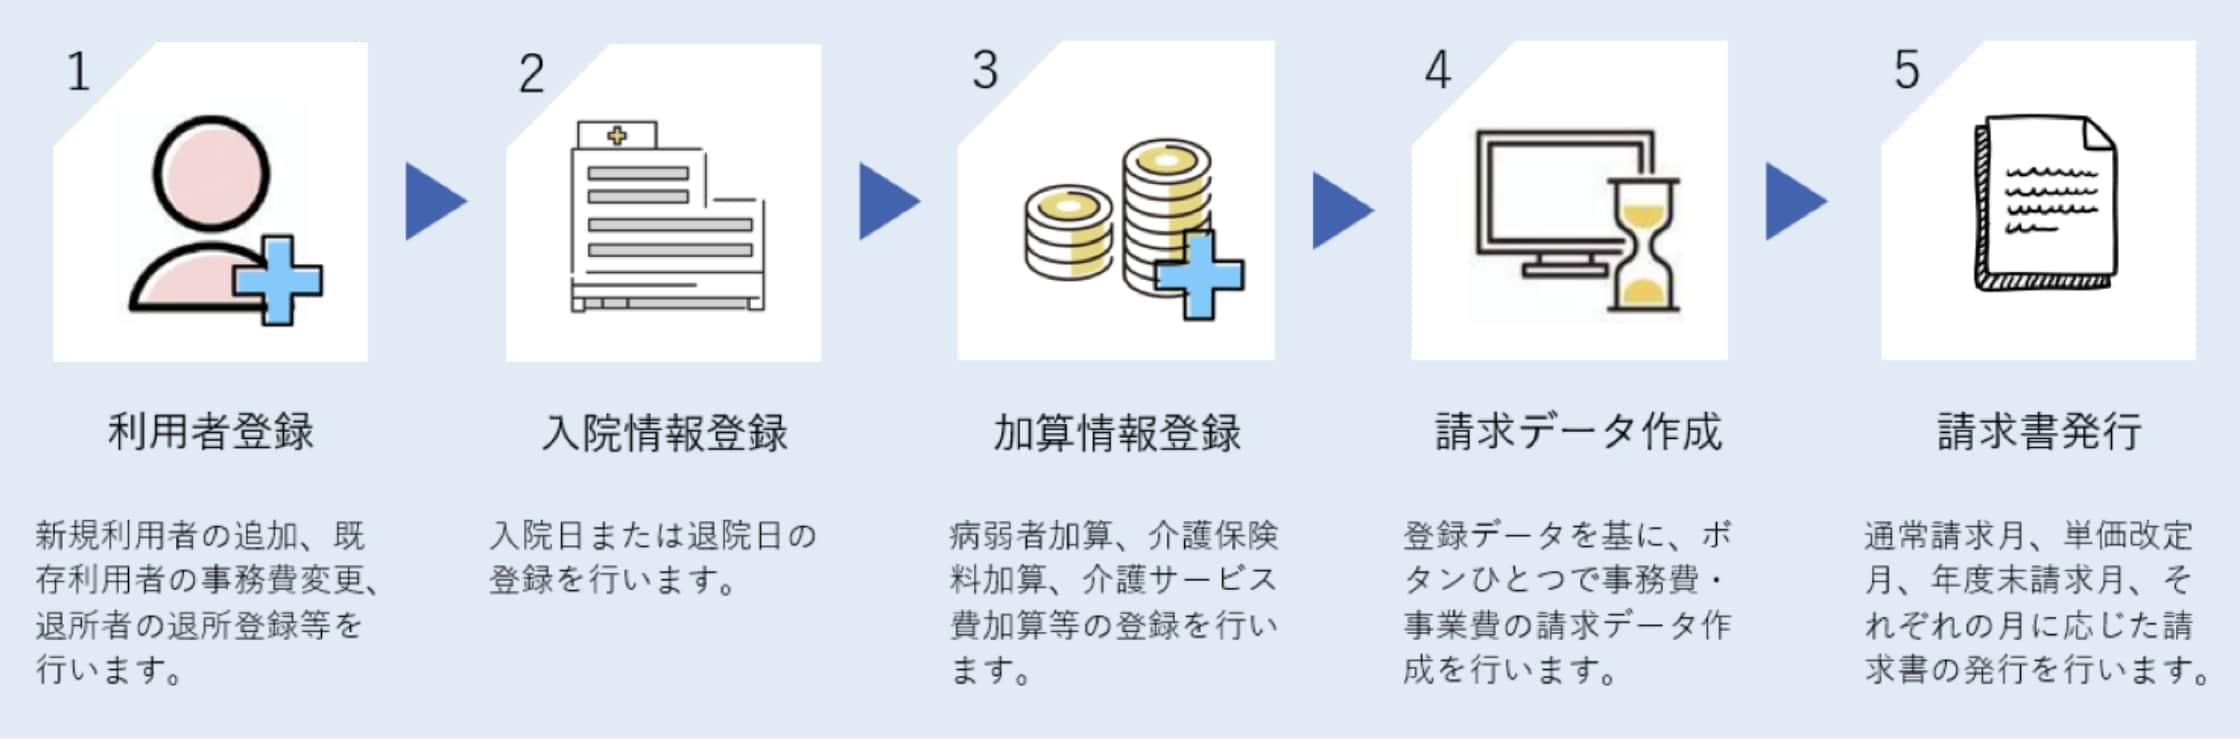 e³office sochi-hi 措置費管理システムの運用イメージ図